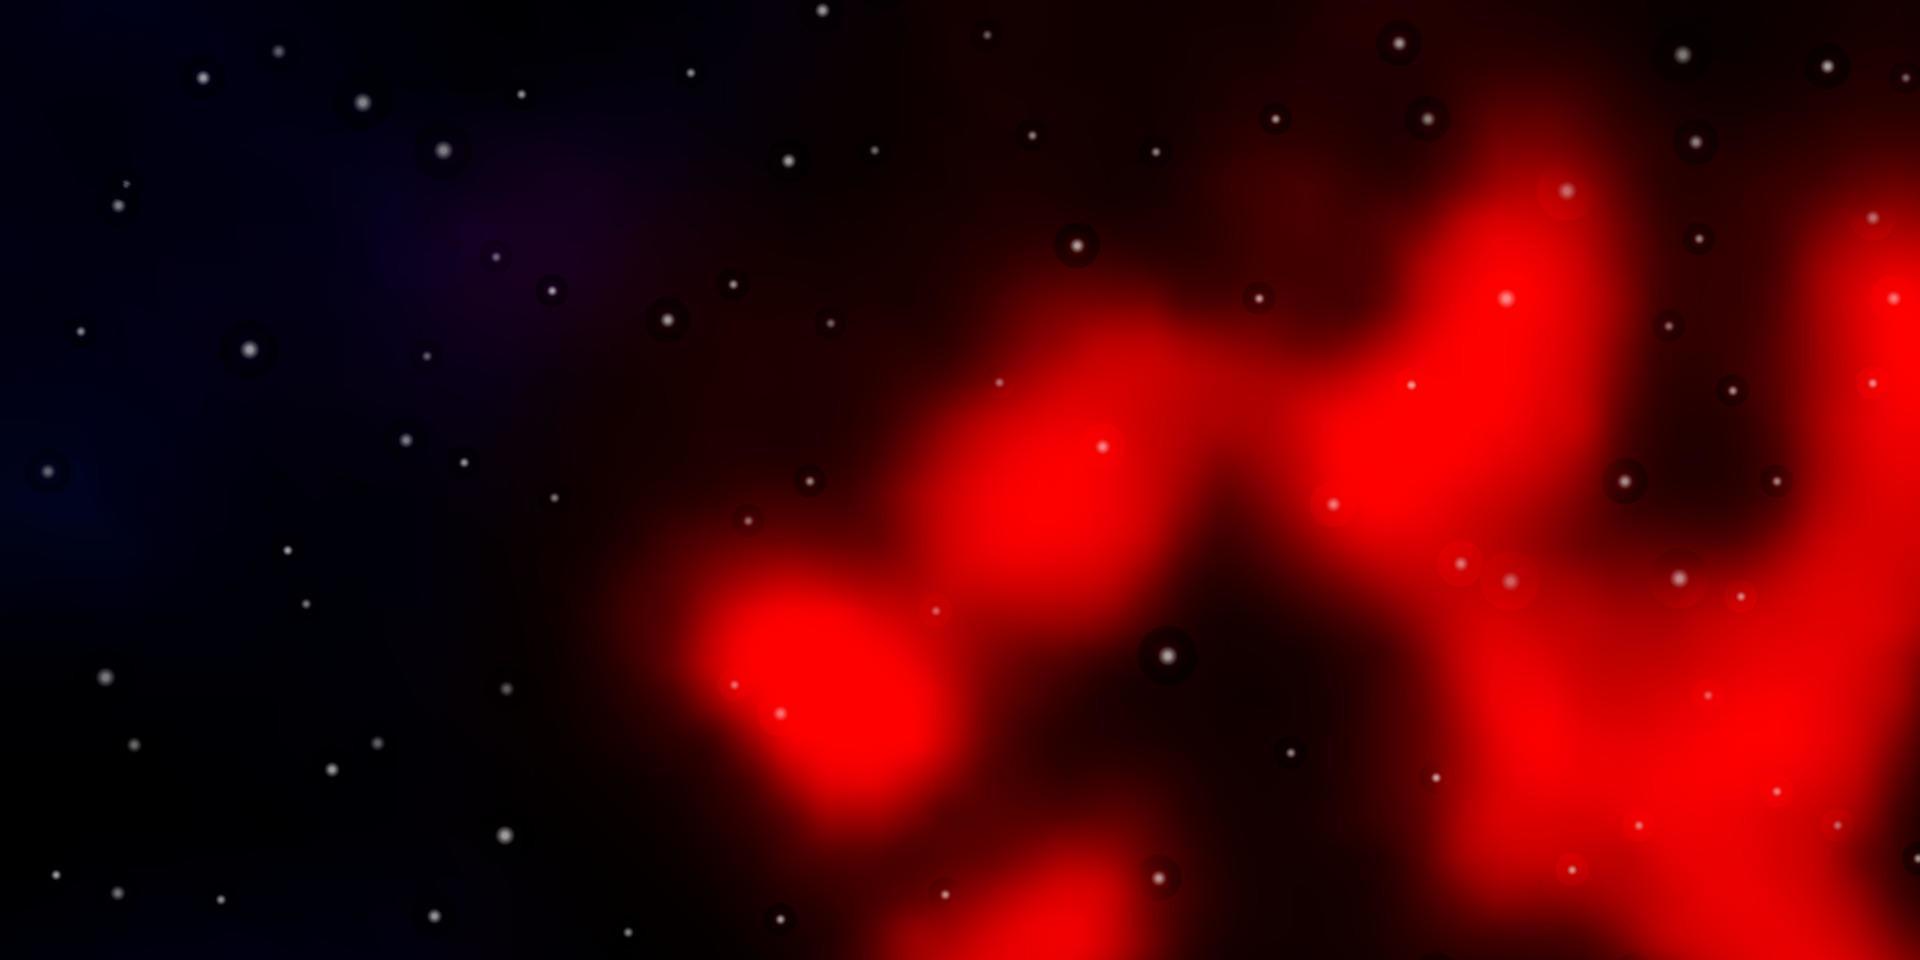 dunkelroter Vektorhintergrund mit kleinen und großen Sternen. vektor